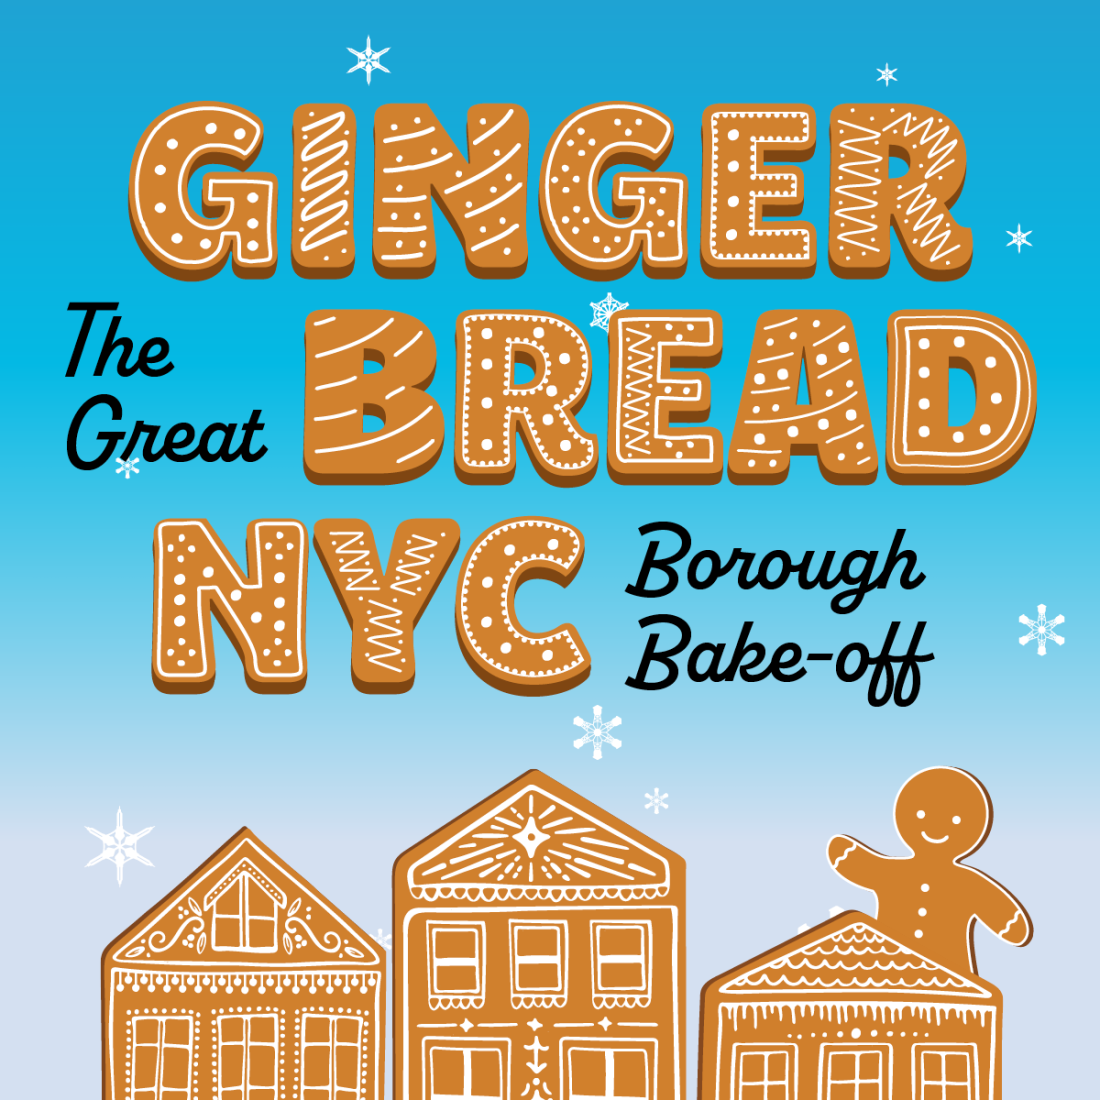 Gingerbread NYC écrit en biscuits au pain d'épice. Les sommets de trois maisons en pain d'épice se trouvent en dessous, avec une personne en pain d'épice jetant un coup d'œil au sommet de celle à l'extrême droite.